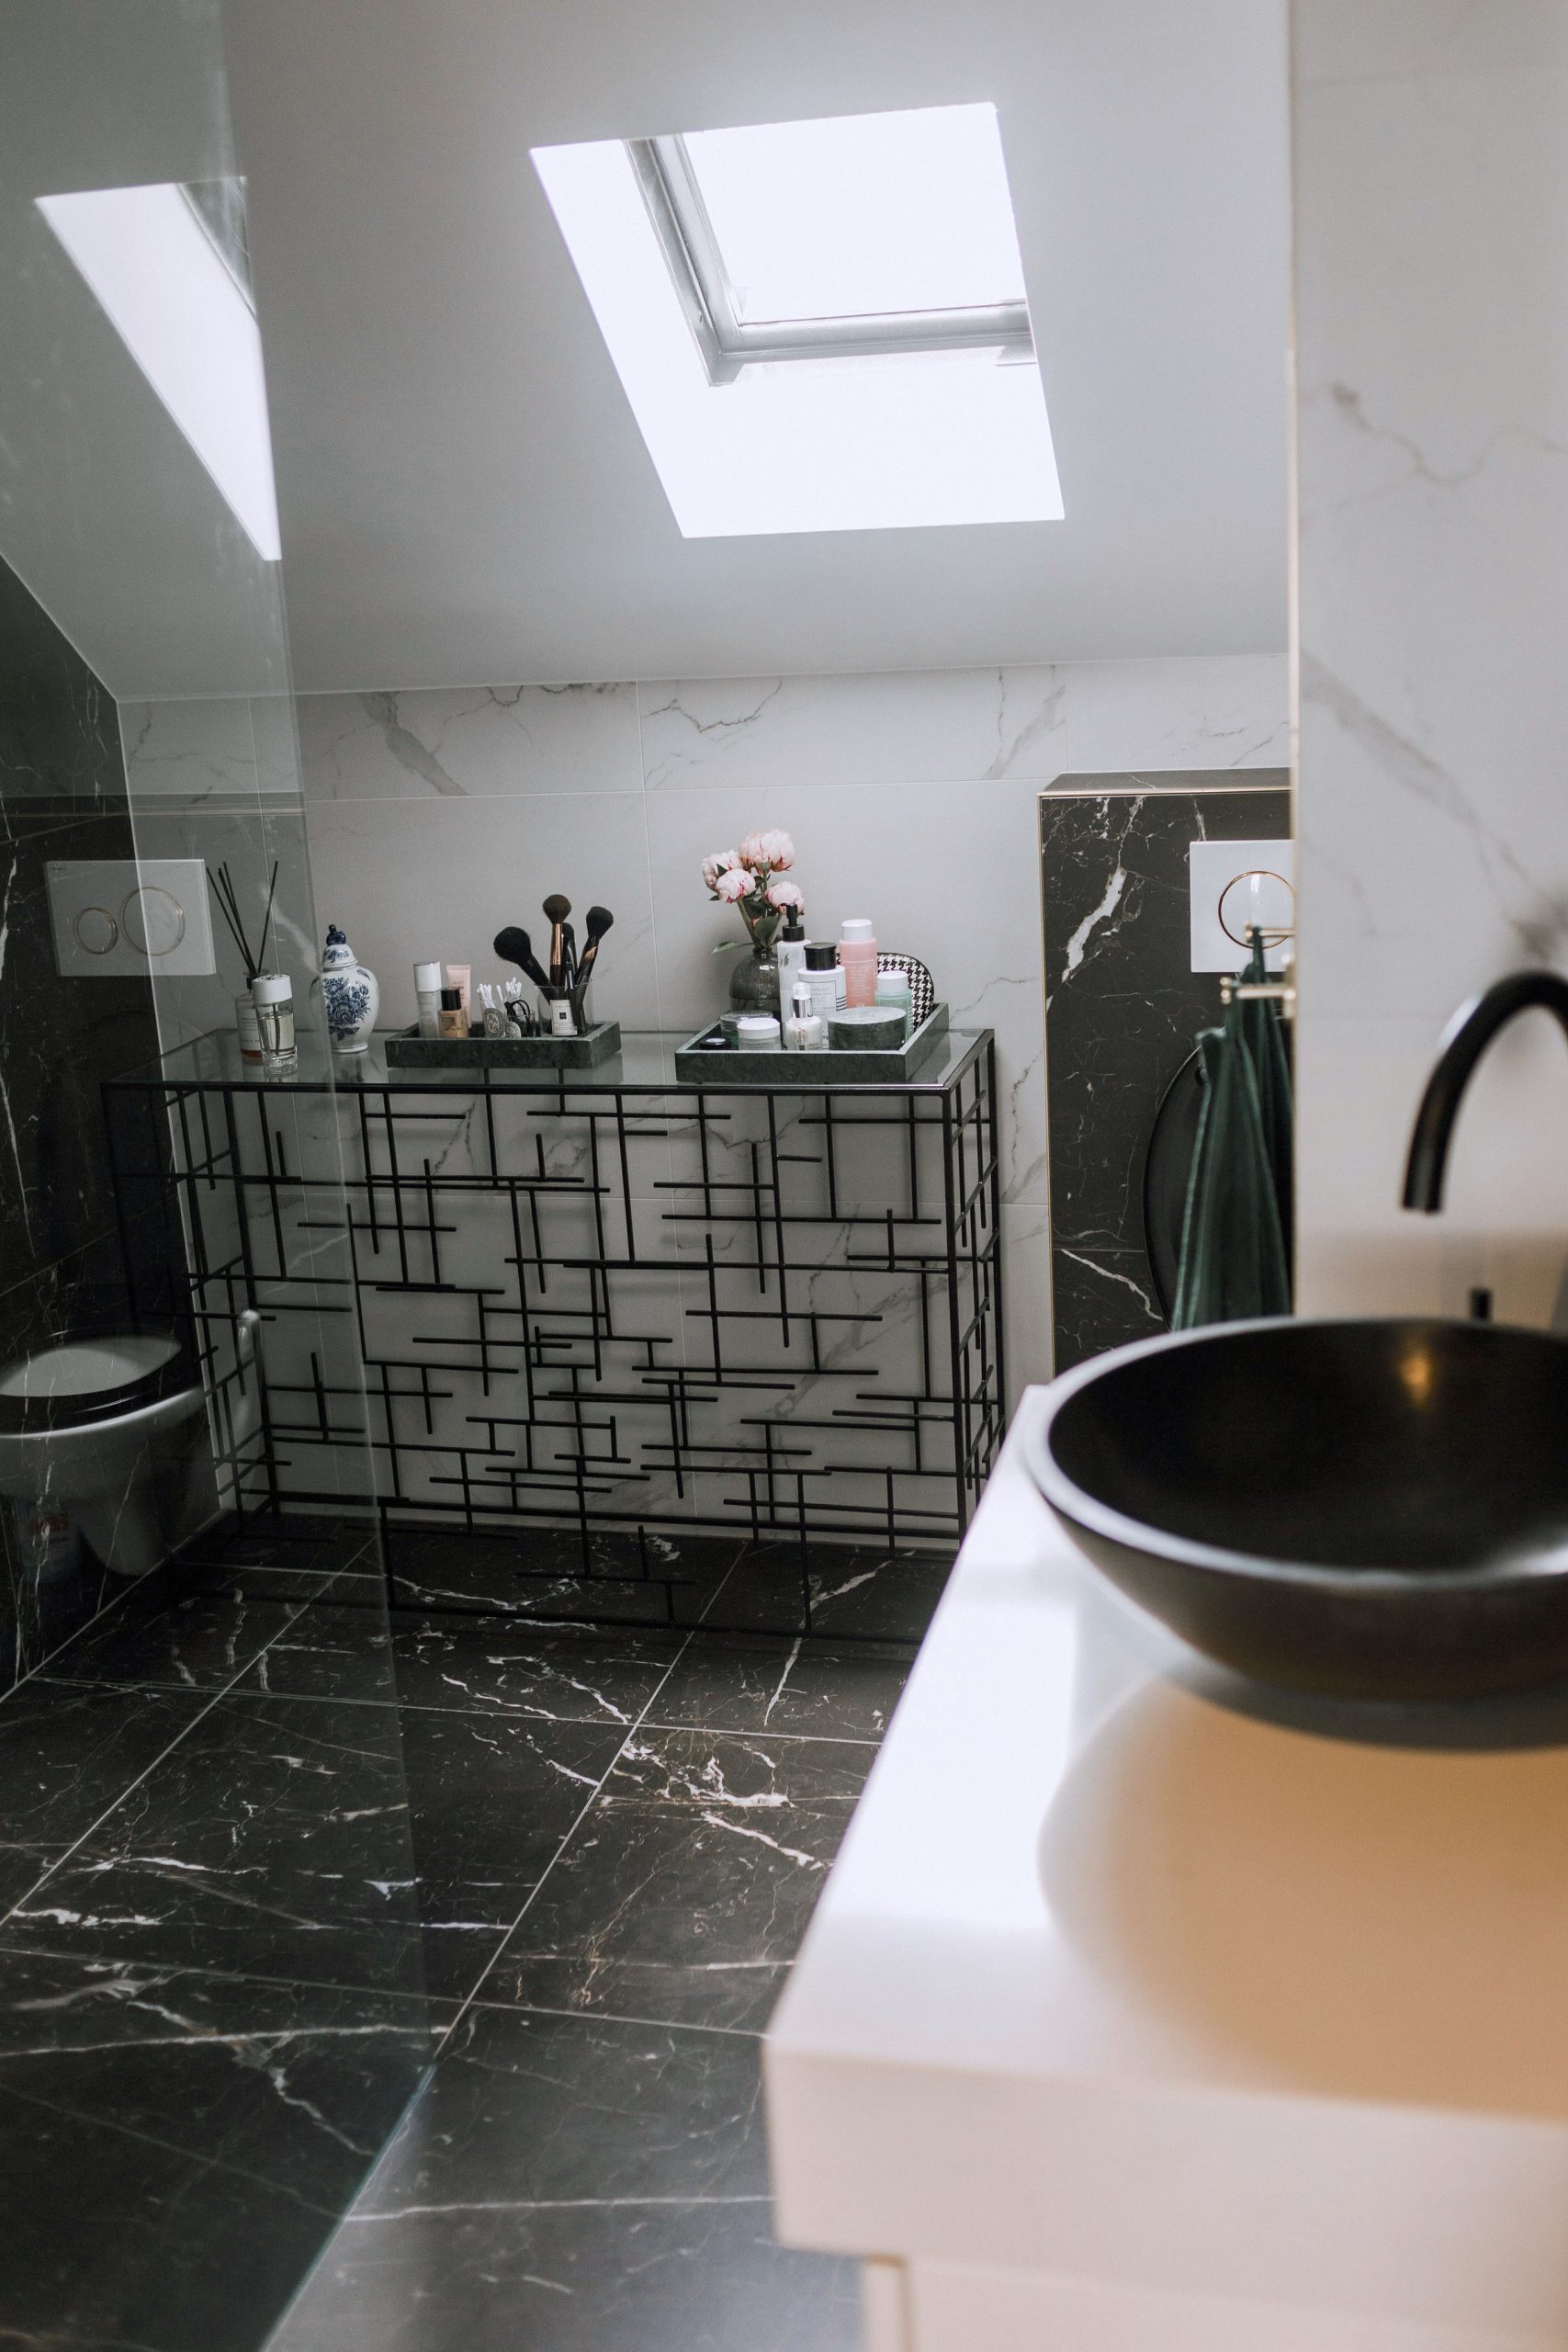 Badkamer schoonmaken tips die je nog niet kent